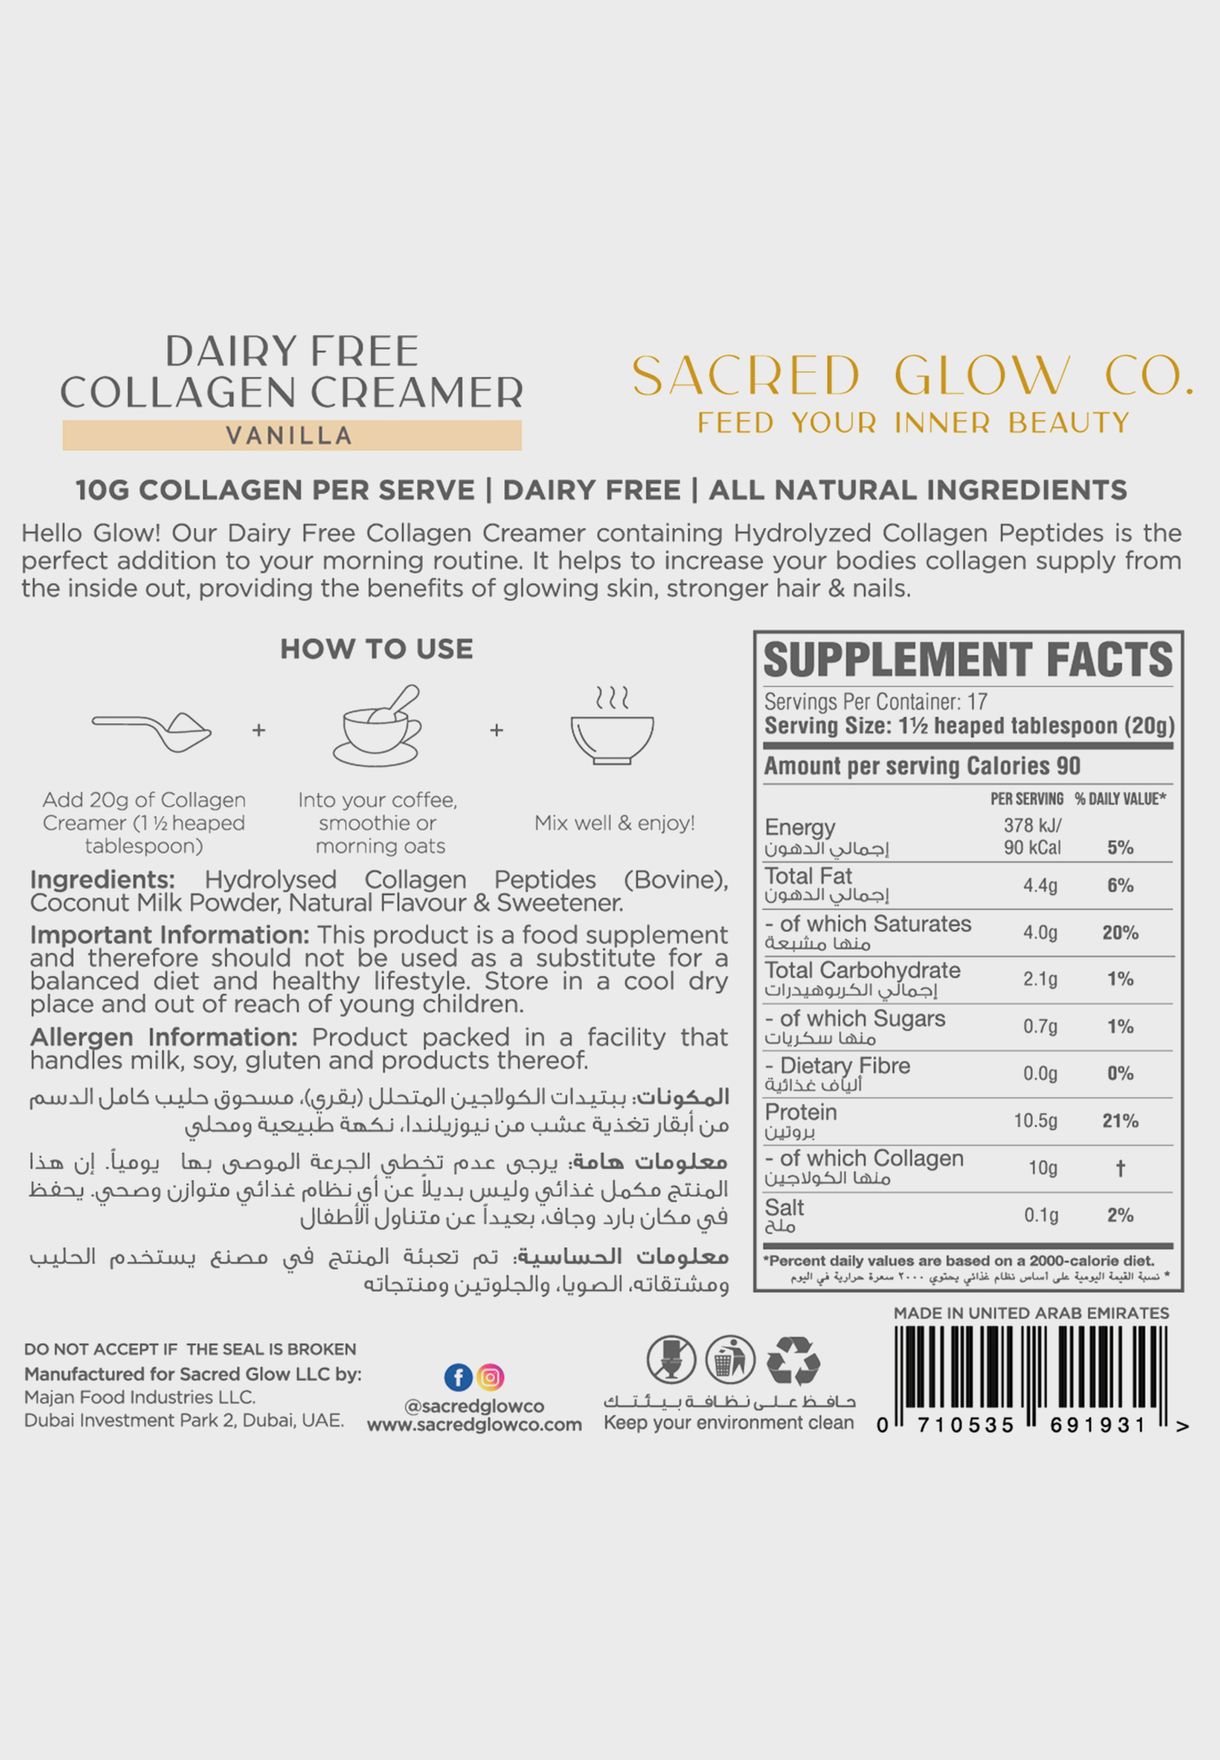 كولاجين كريمر خالي من منتجات الألبان  - نكهة الفانيليا الطبيعية (17 حصة)